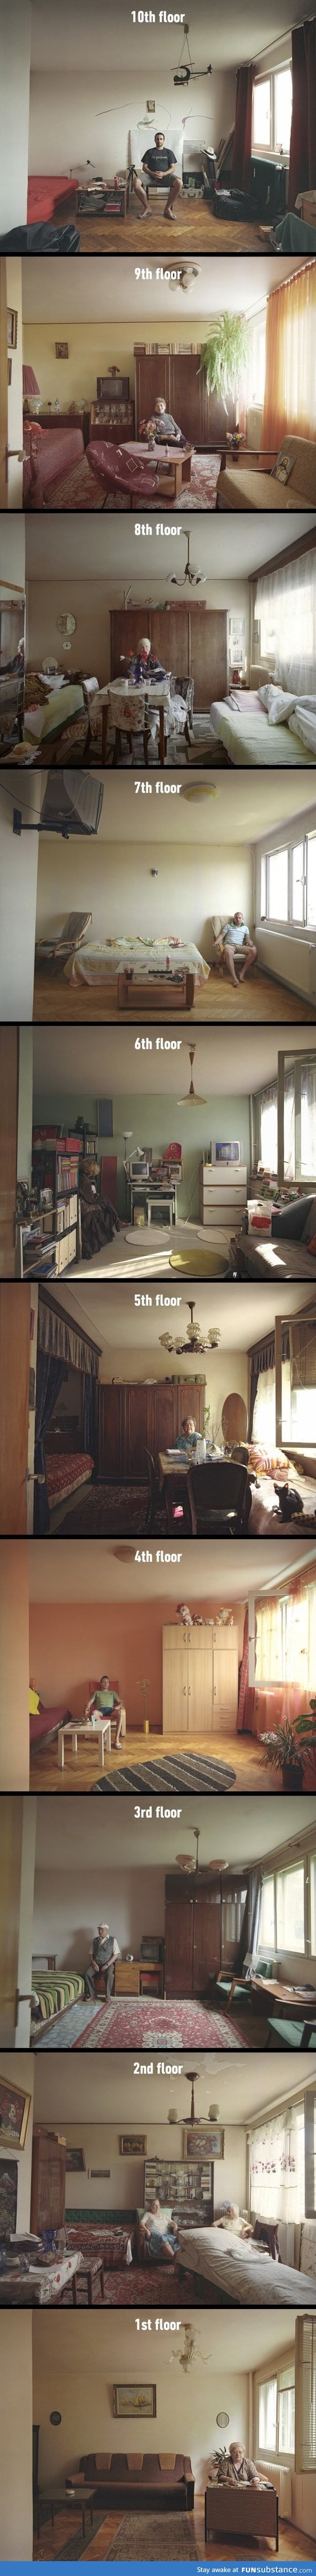 Different floor same apartment